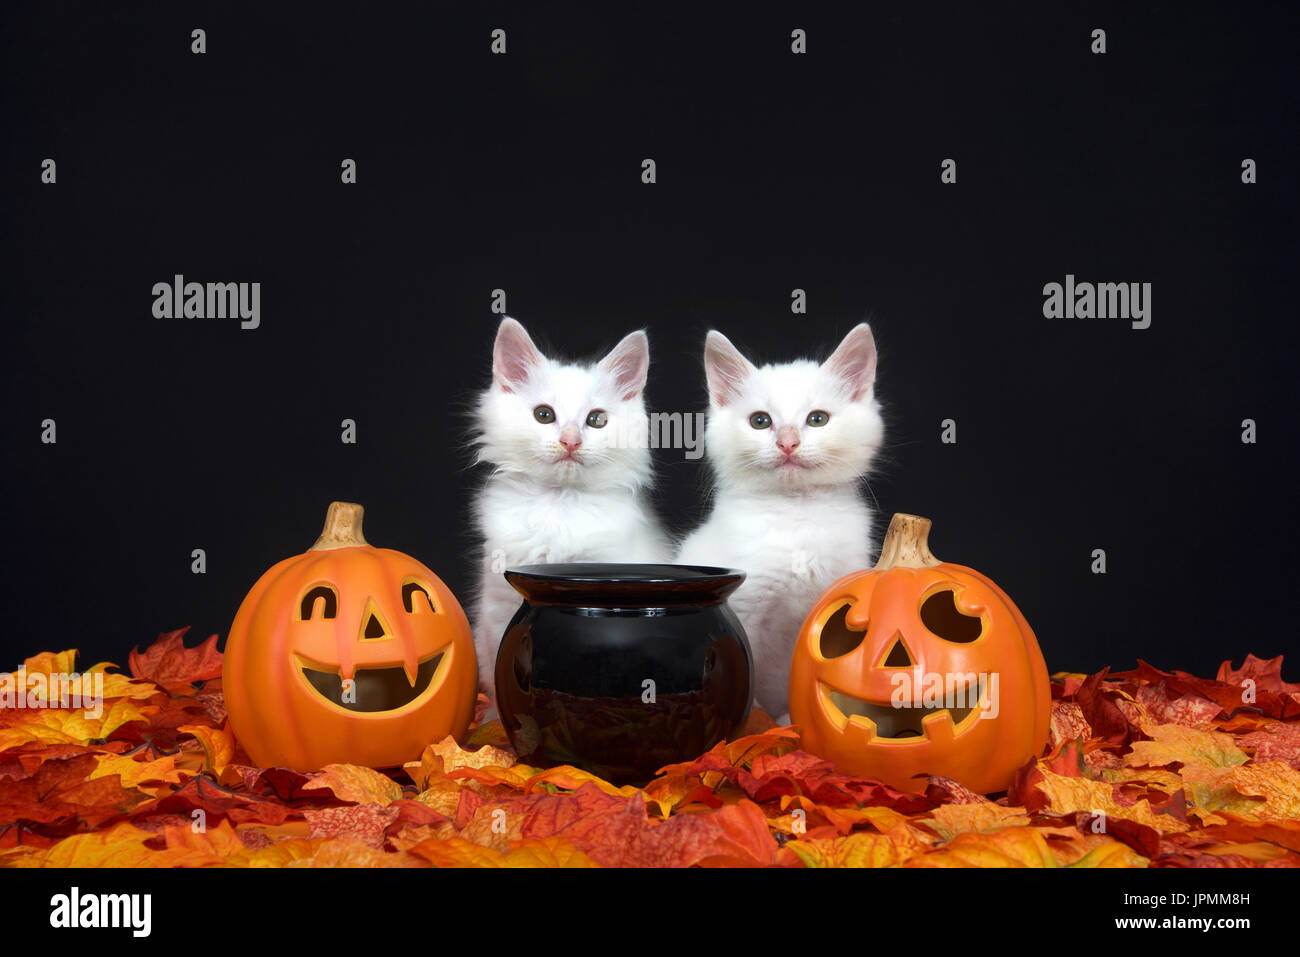 Deux chatons blancs moelleux assis derrière un chaudron noir avec jack o lanterne sur deux côtés entouré de feuilles d'automne l'automne, fond noir. Banque D'Images